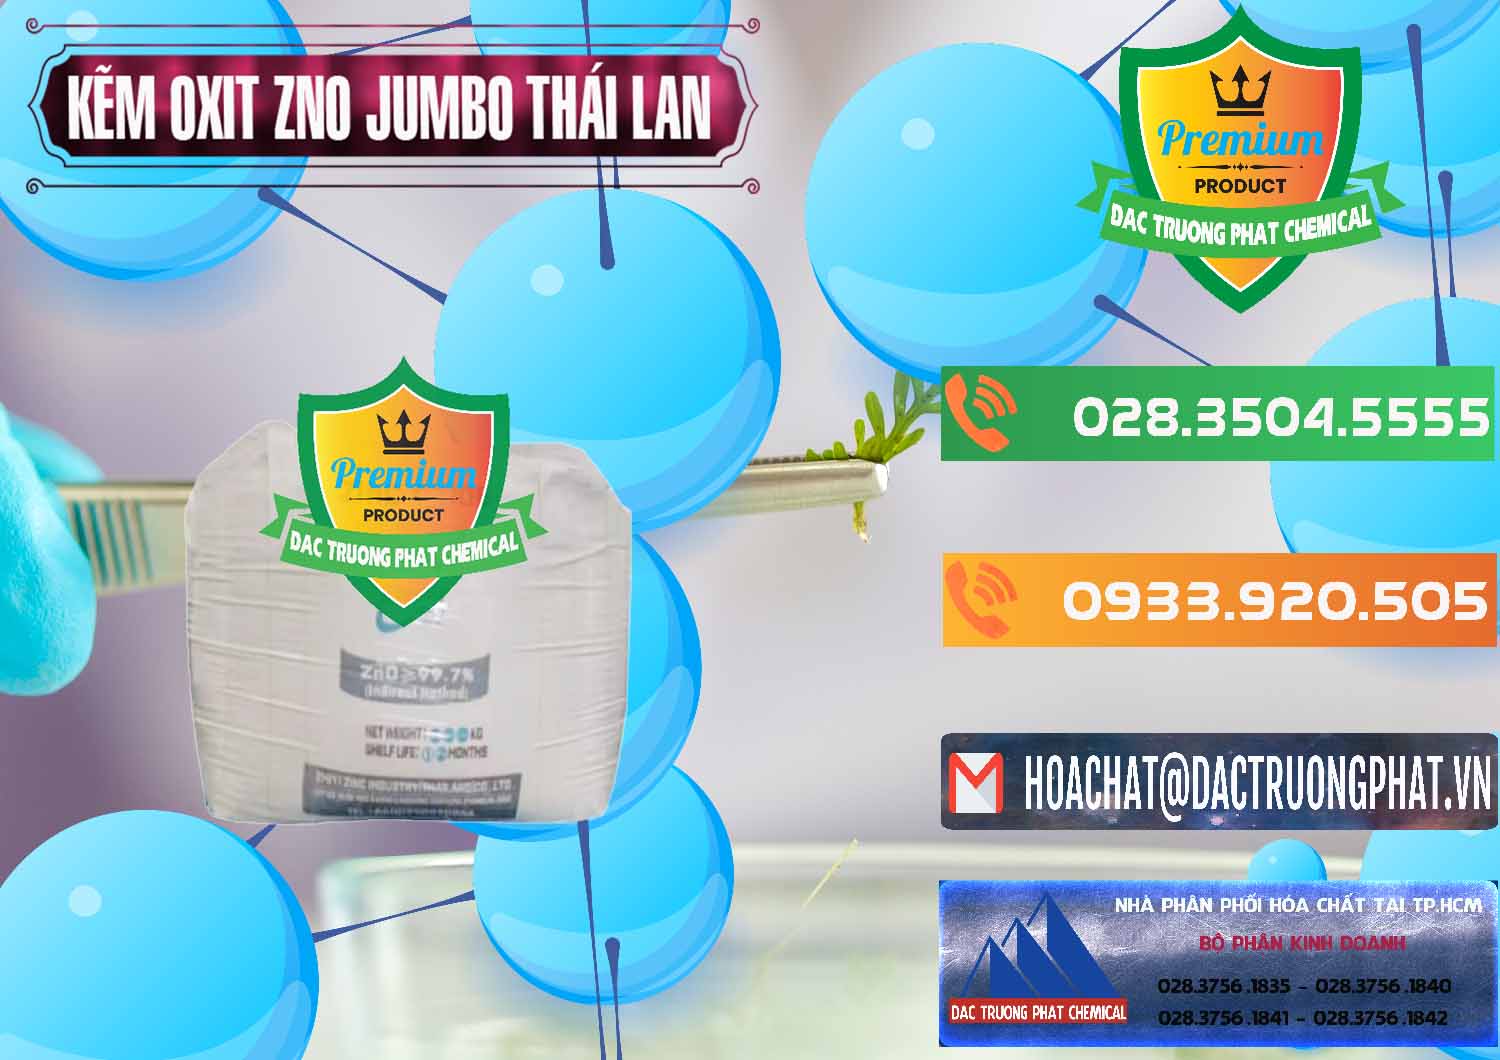 Cty bán - cung ứng Zinc Oxide - Bột Kẽm Oxit ZNO Jumbo Bành Thái Lan Thailand - 0370 - Cty bán _ cung cấp hóa chất tại TP.HCM - hoachatxulynuoc.com.vn